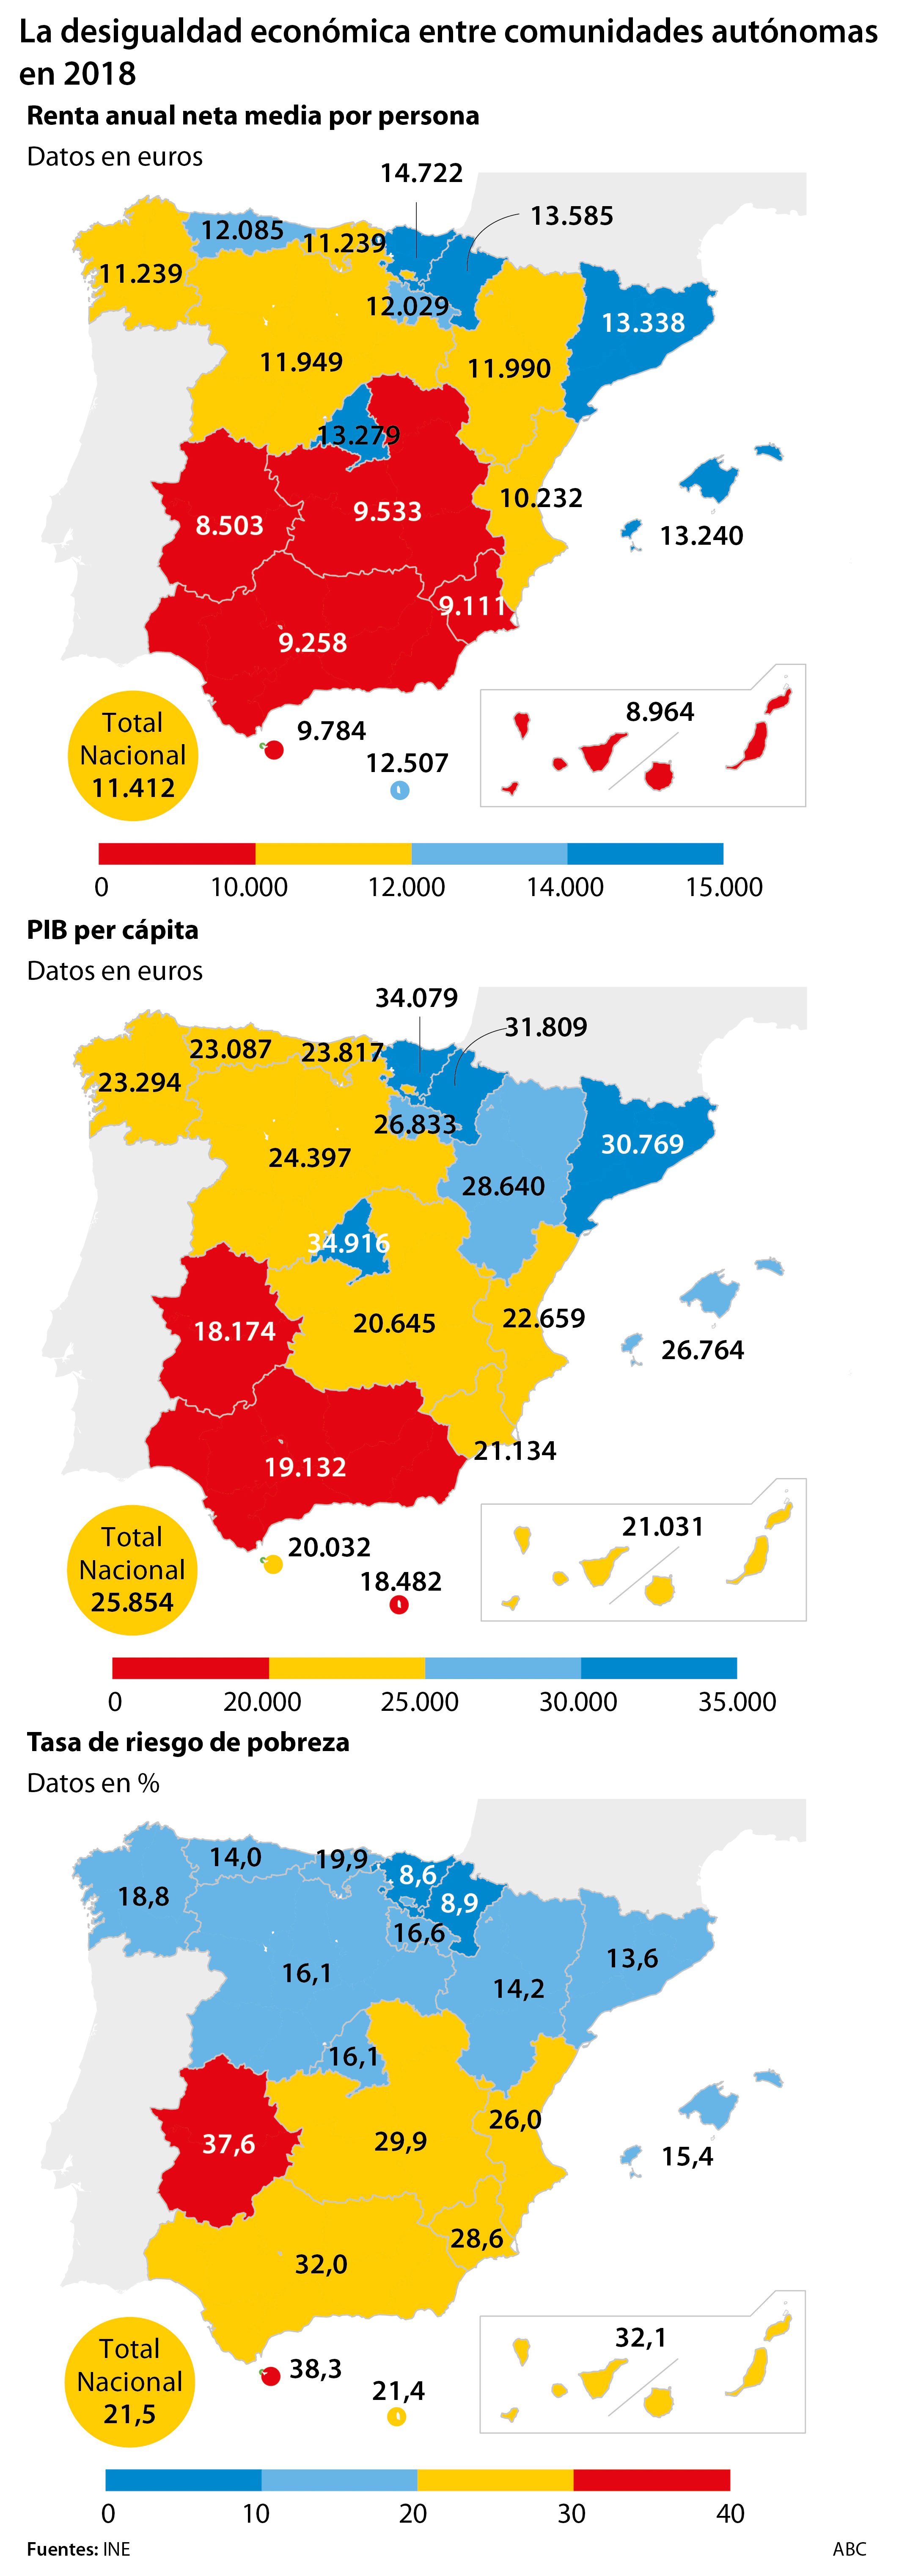 De norte a sur: la España autonómica de ricos y pobres